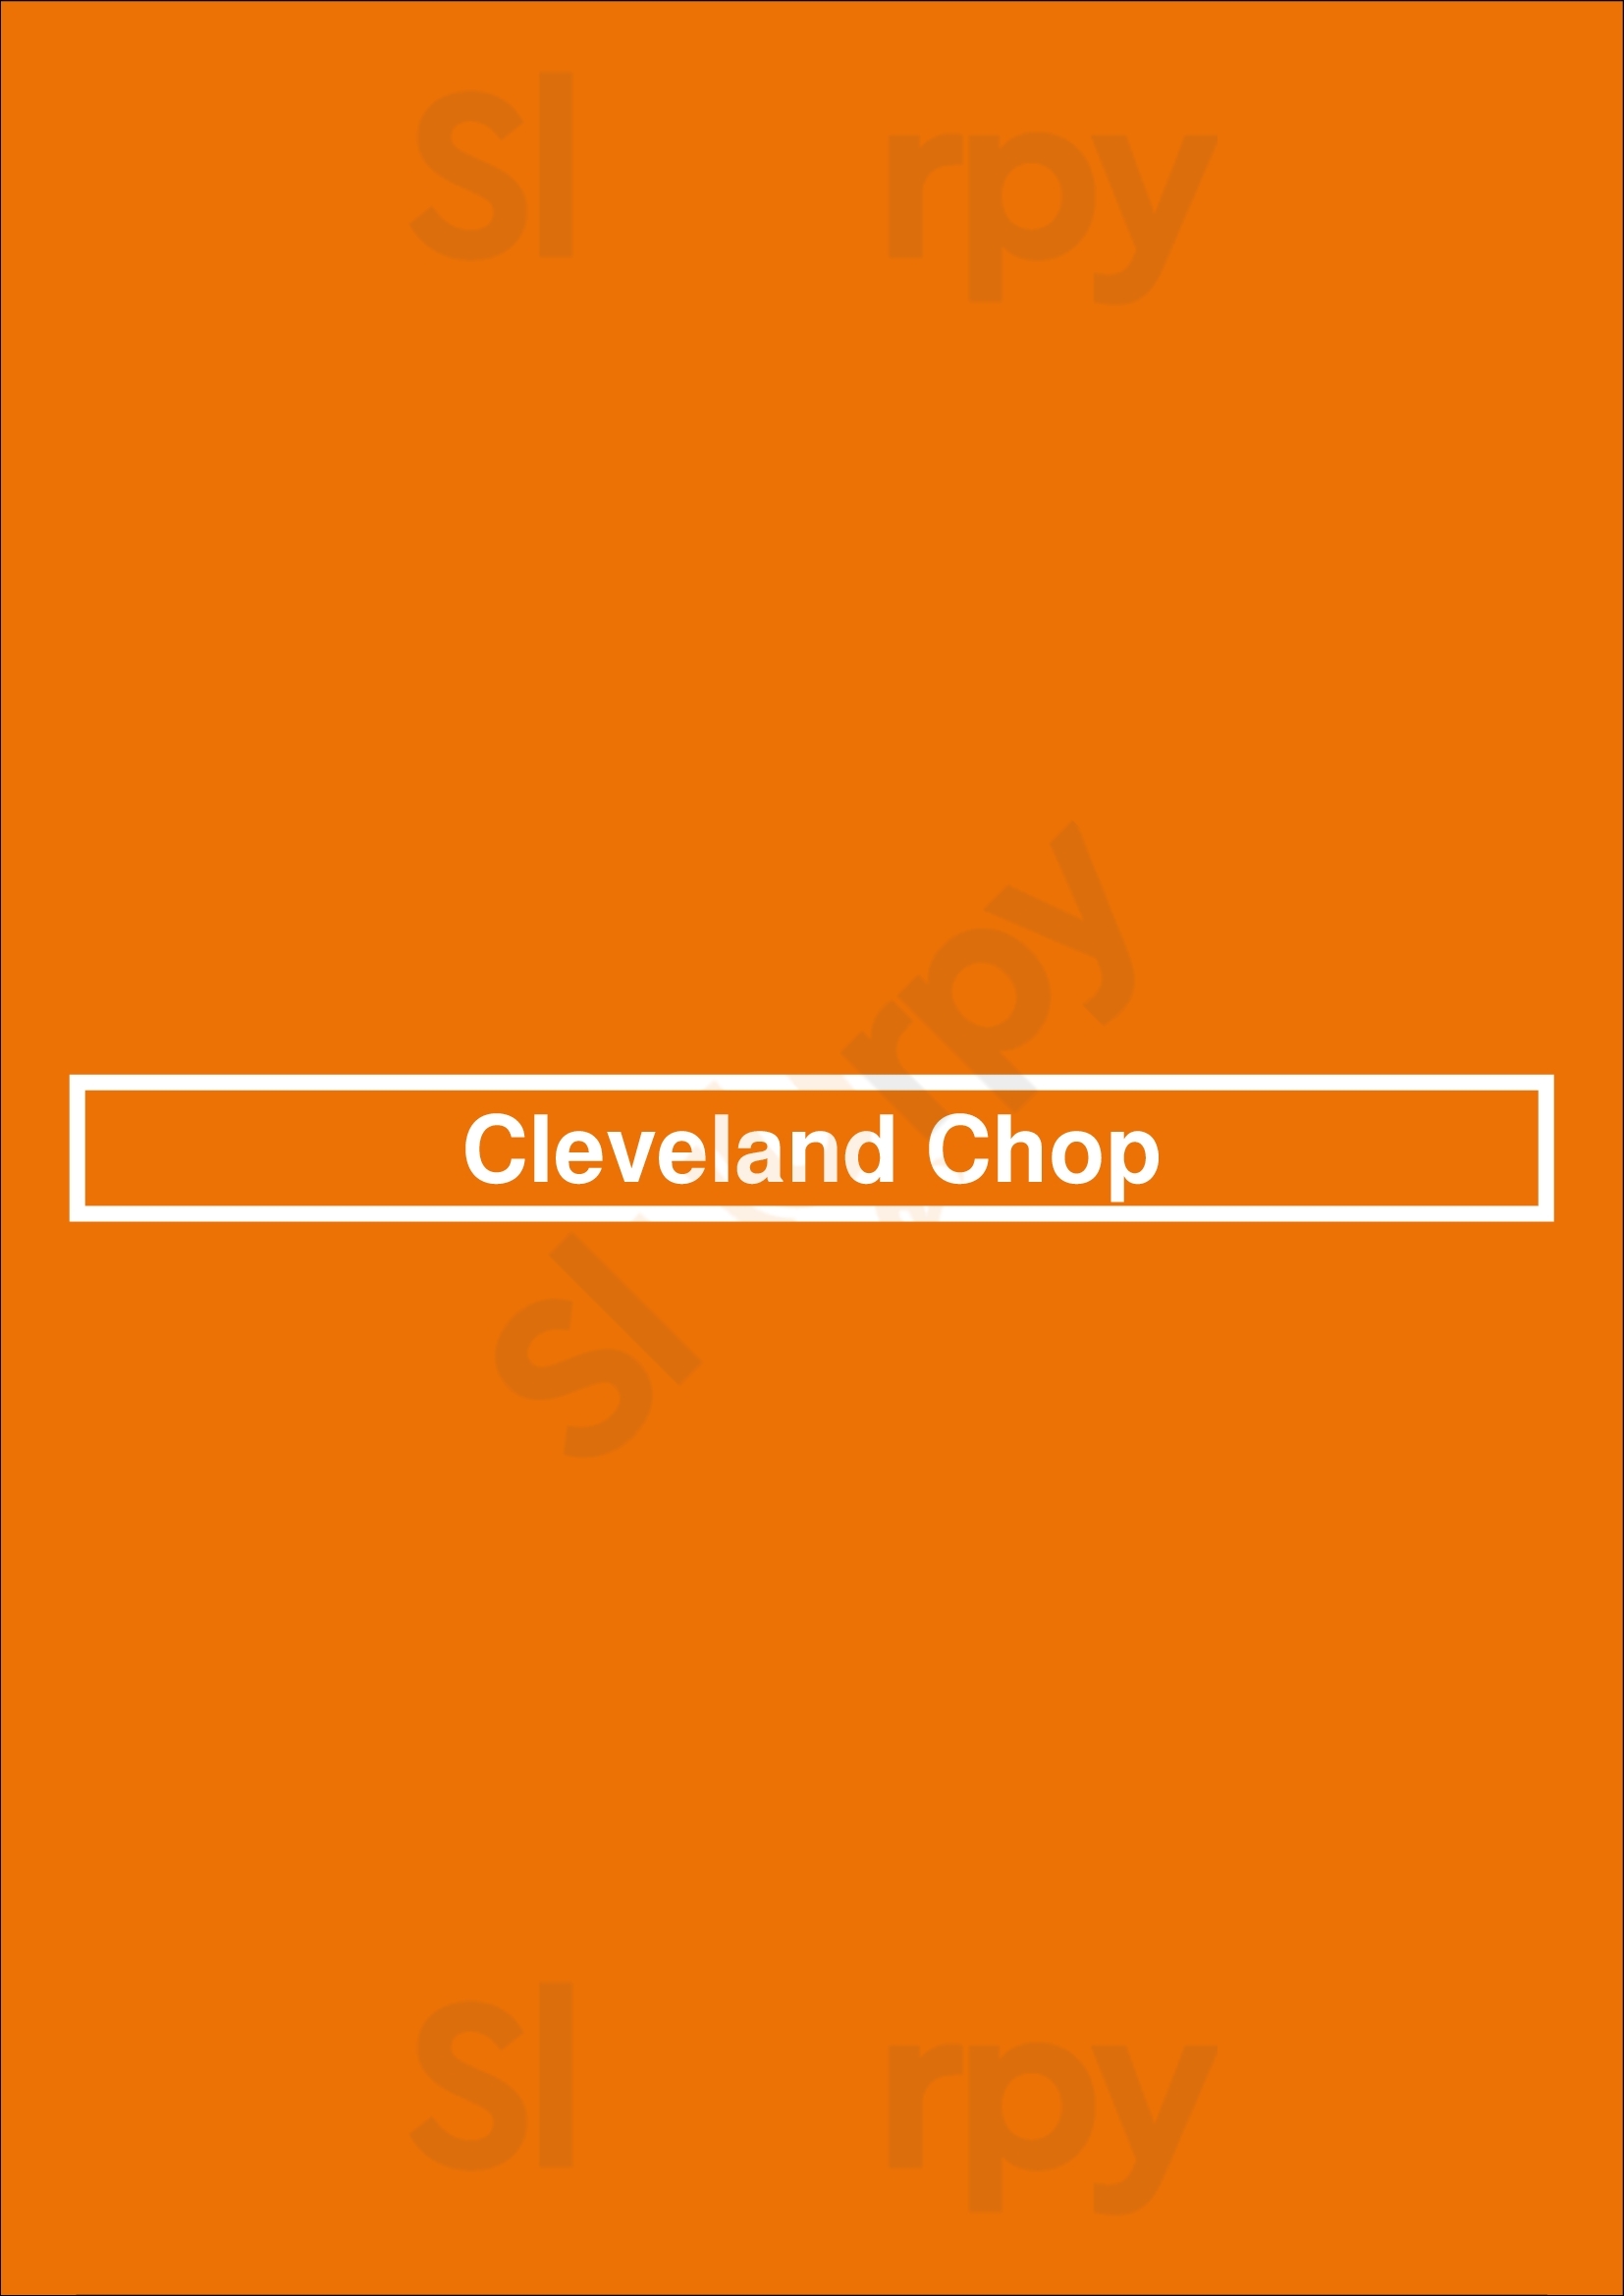 Cleveland Chop Cleveland Menu - 1